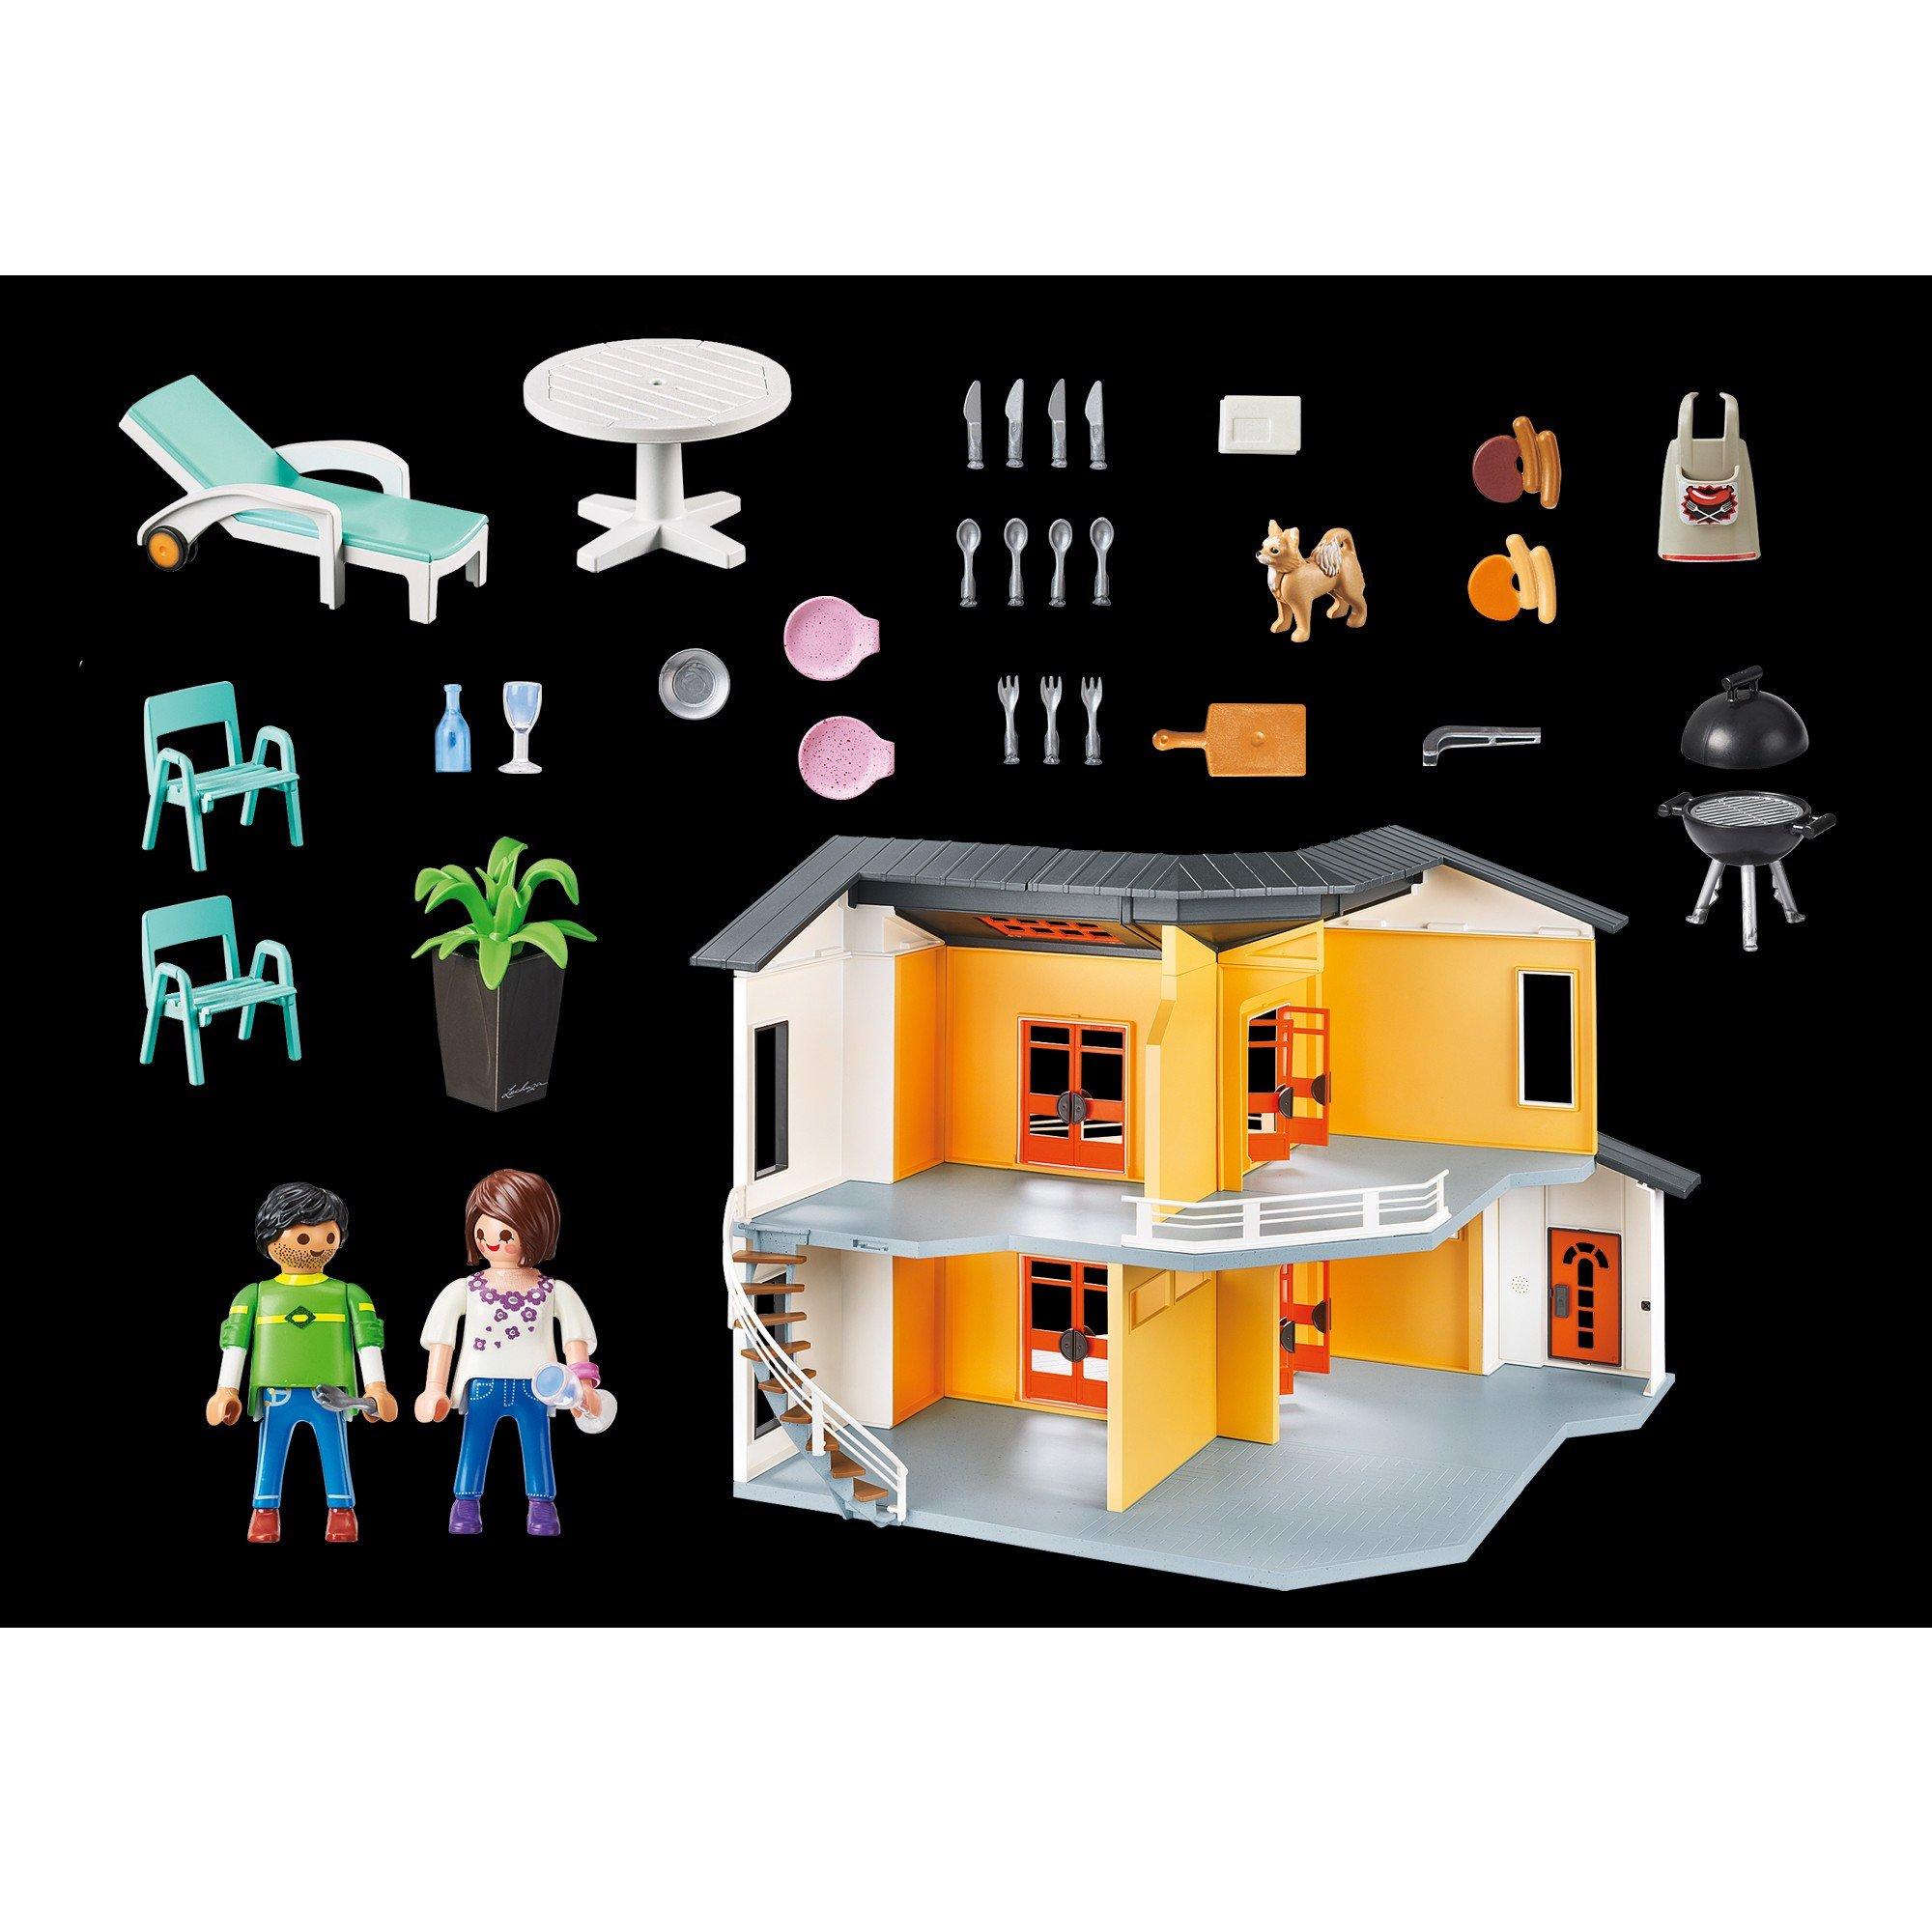 Đồ chơi mô hình Playmobil Biệt thự hiện đại kèm nhân vật, nội thất và hiệu ứng đèn &amp; âm thanh 137 pcs